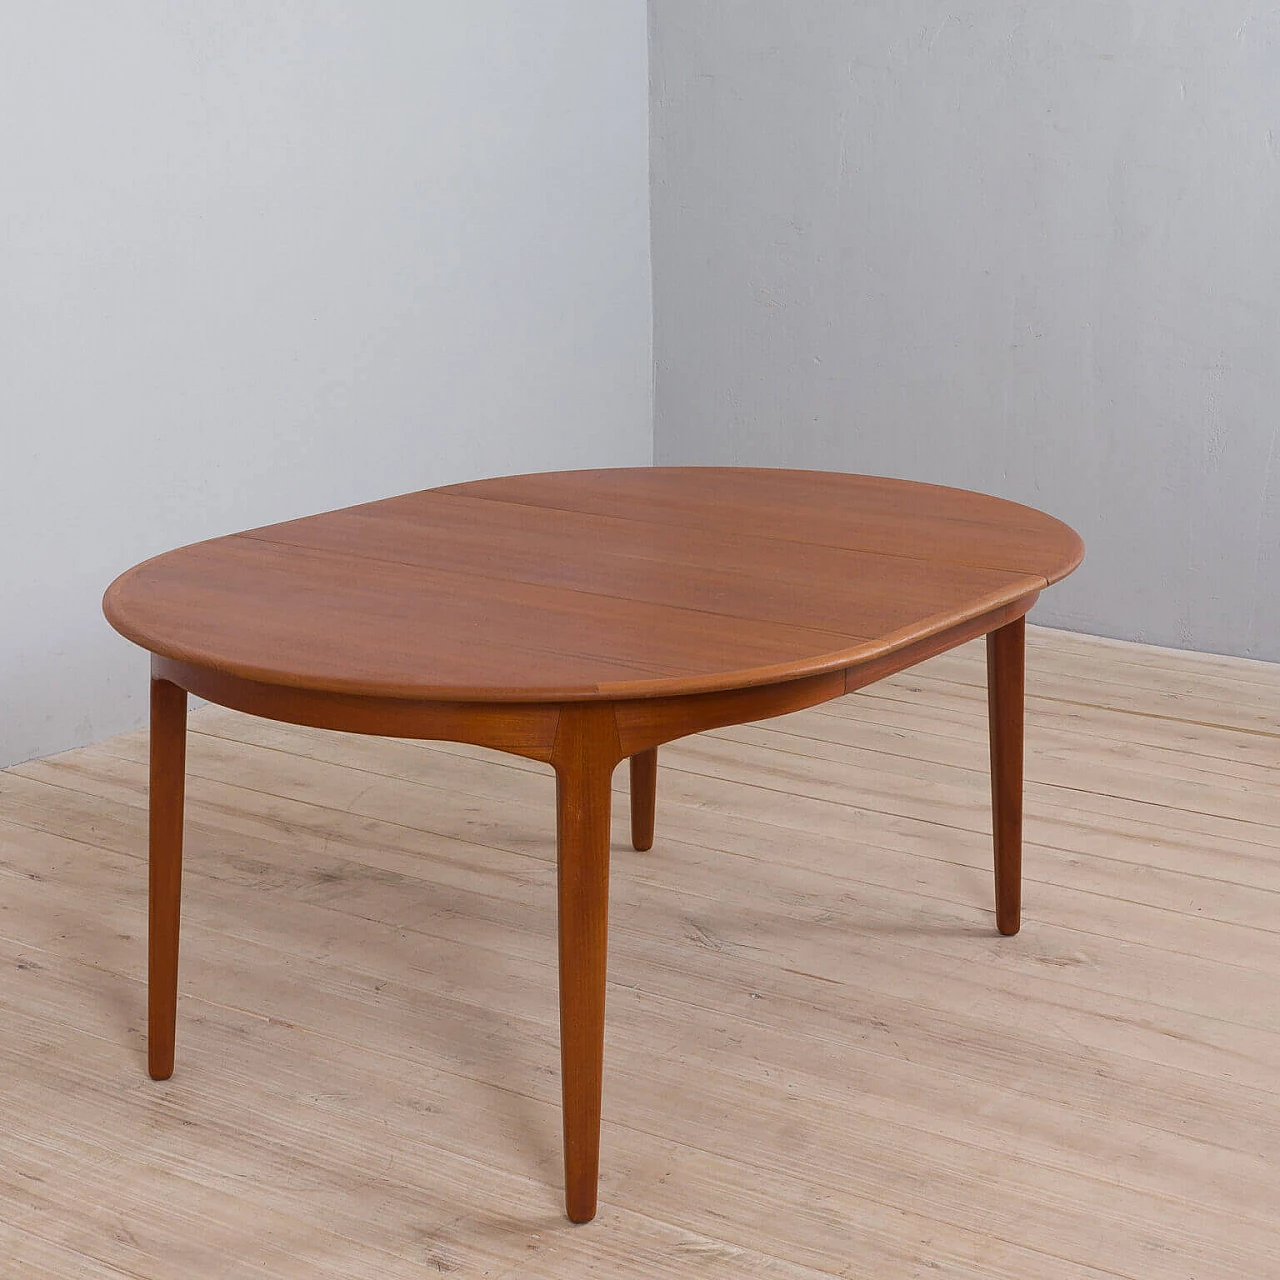 Round extendable table model 62 in teak by Henning Kjaernulf For Sorø Stolefabrik, 60s 1476110